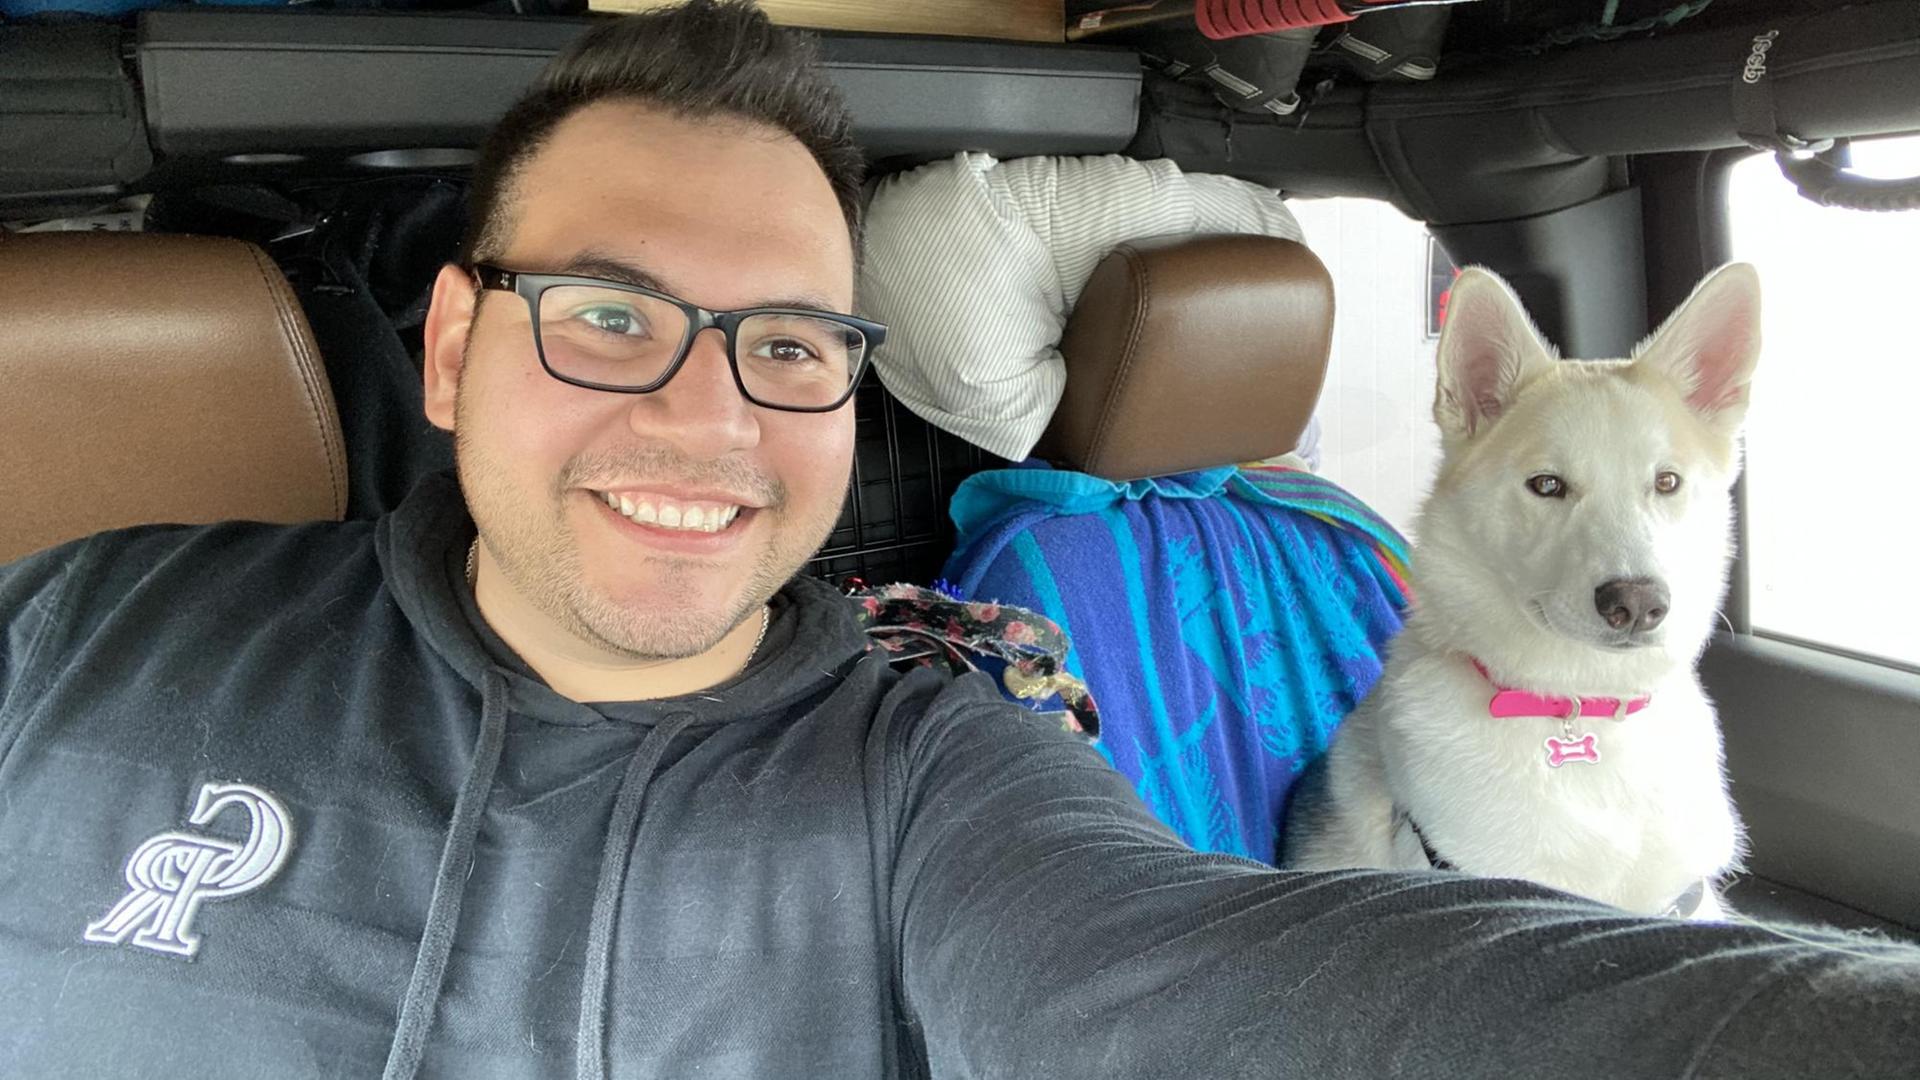 Ein lächelnder junger Mann, Oscar Garza, mit Brille sitzt im Auto. Neben ihm eine weiße Hündin auf dem Beifahrersitz.